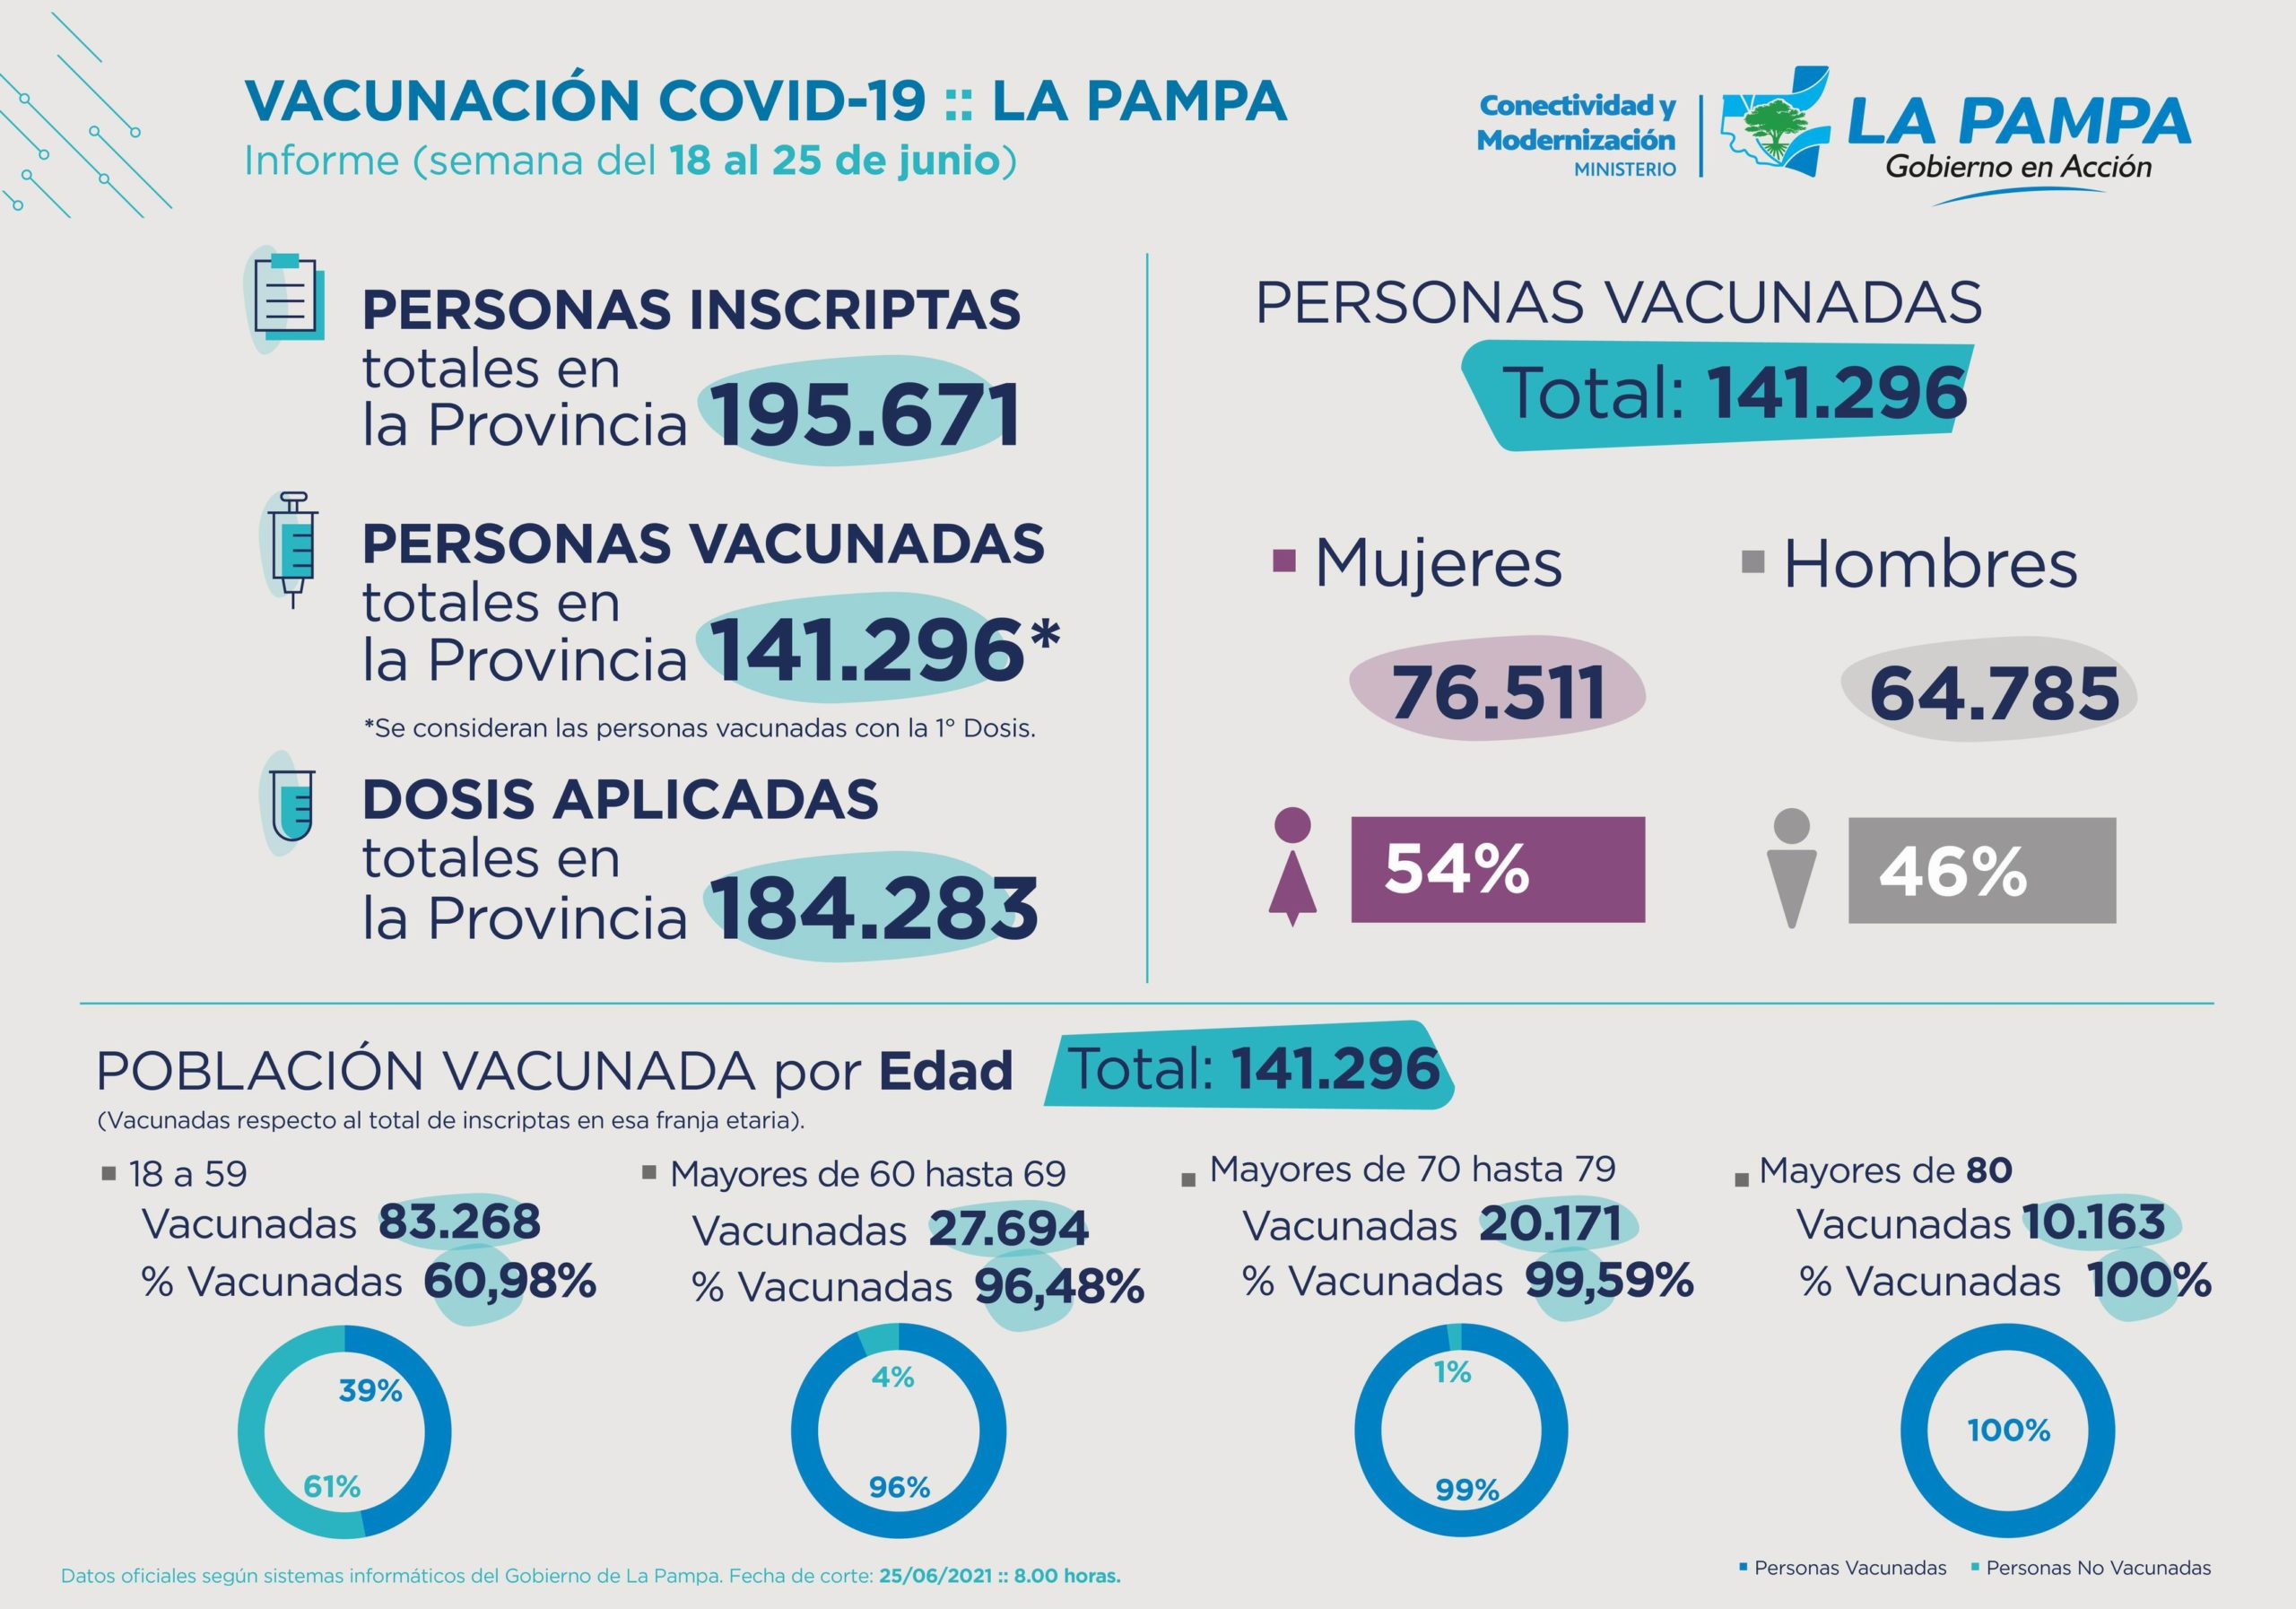 Covid-19: En La Pampa se han vacunado 141.296 personas, de las cuales 76.511 son mujeres